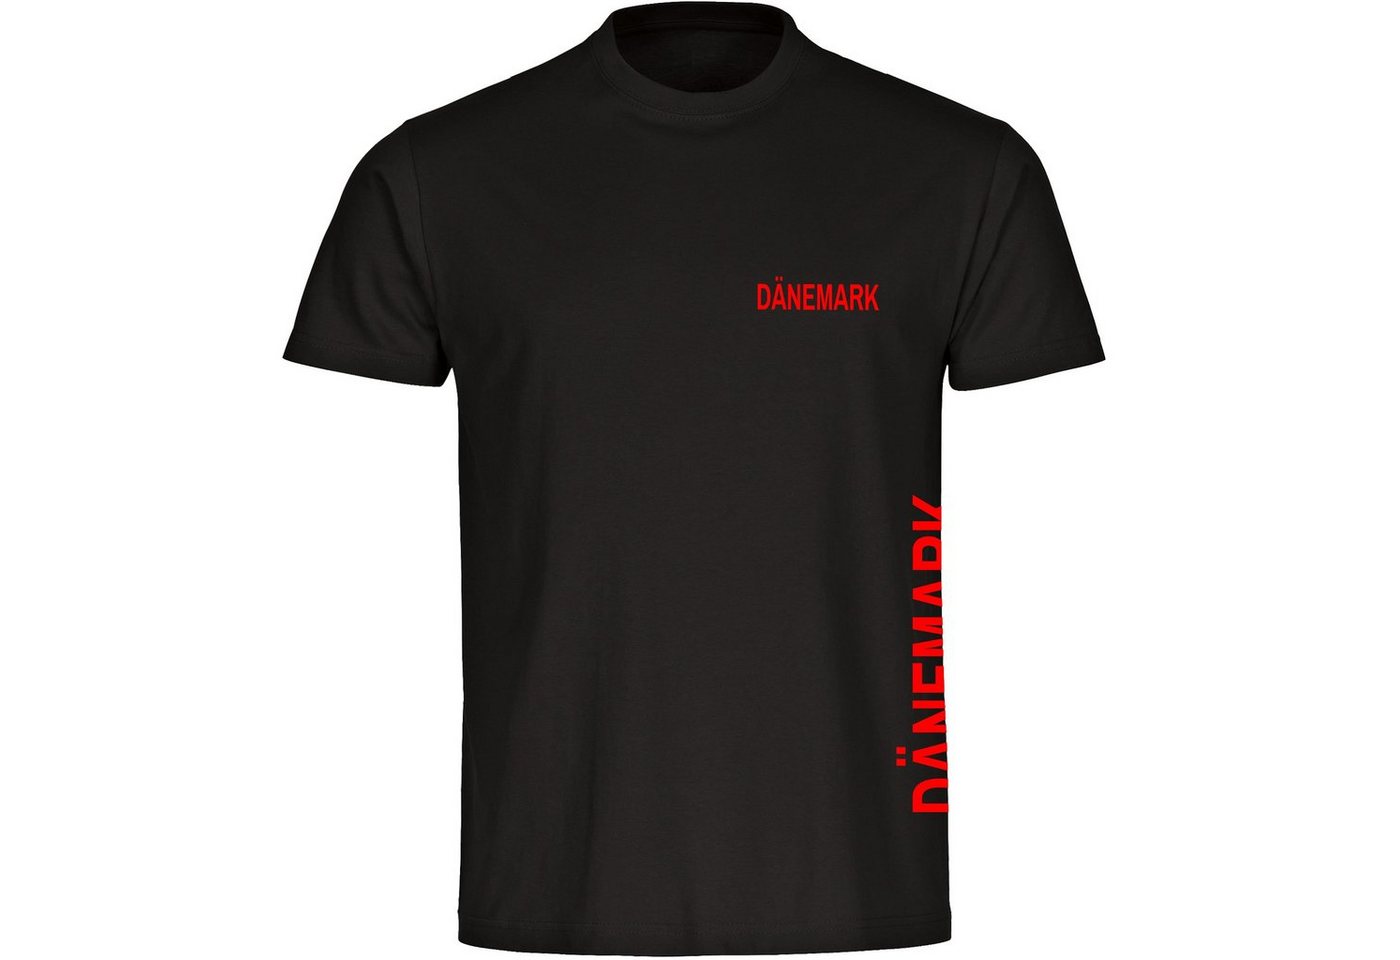 multifanshop T-Shirt Herren Dänemark - Brust & Seite - Männer von multifanshop